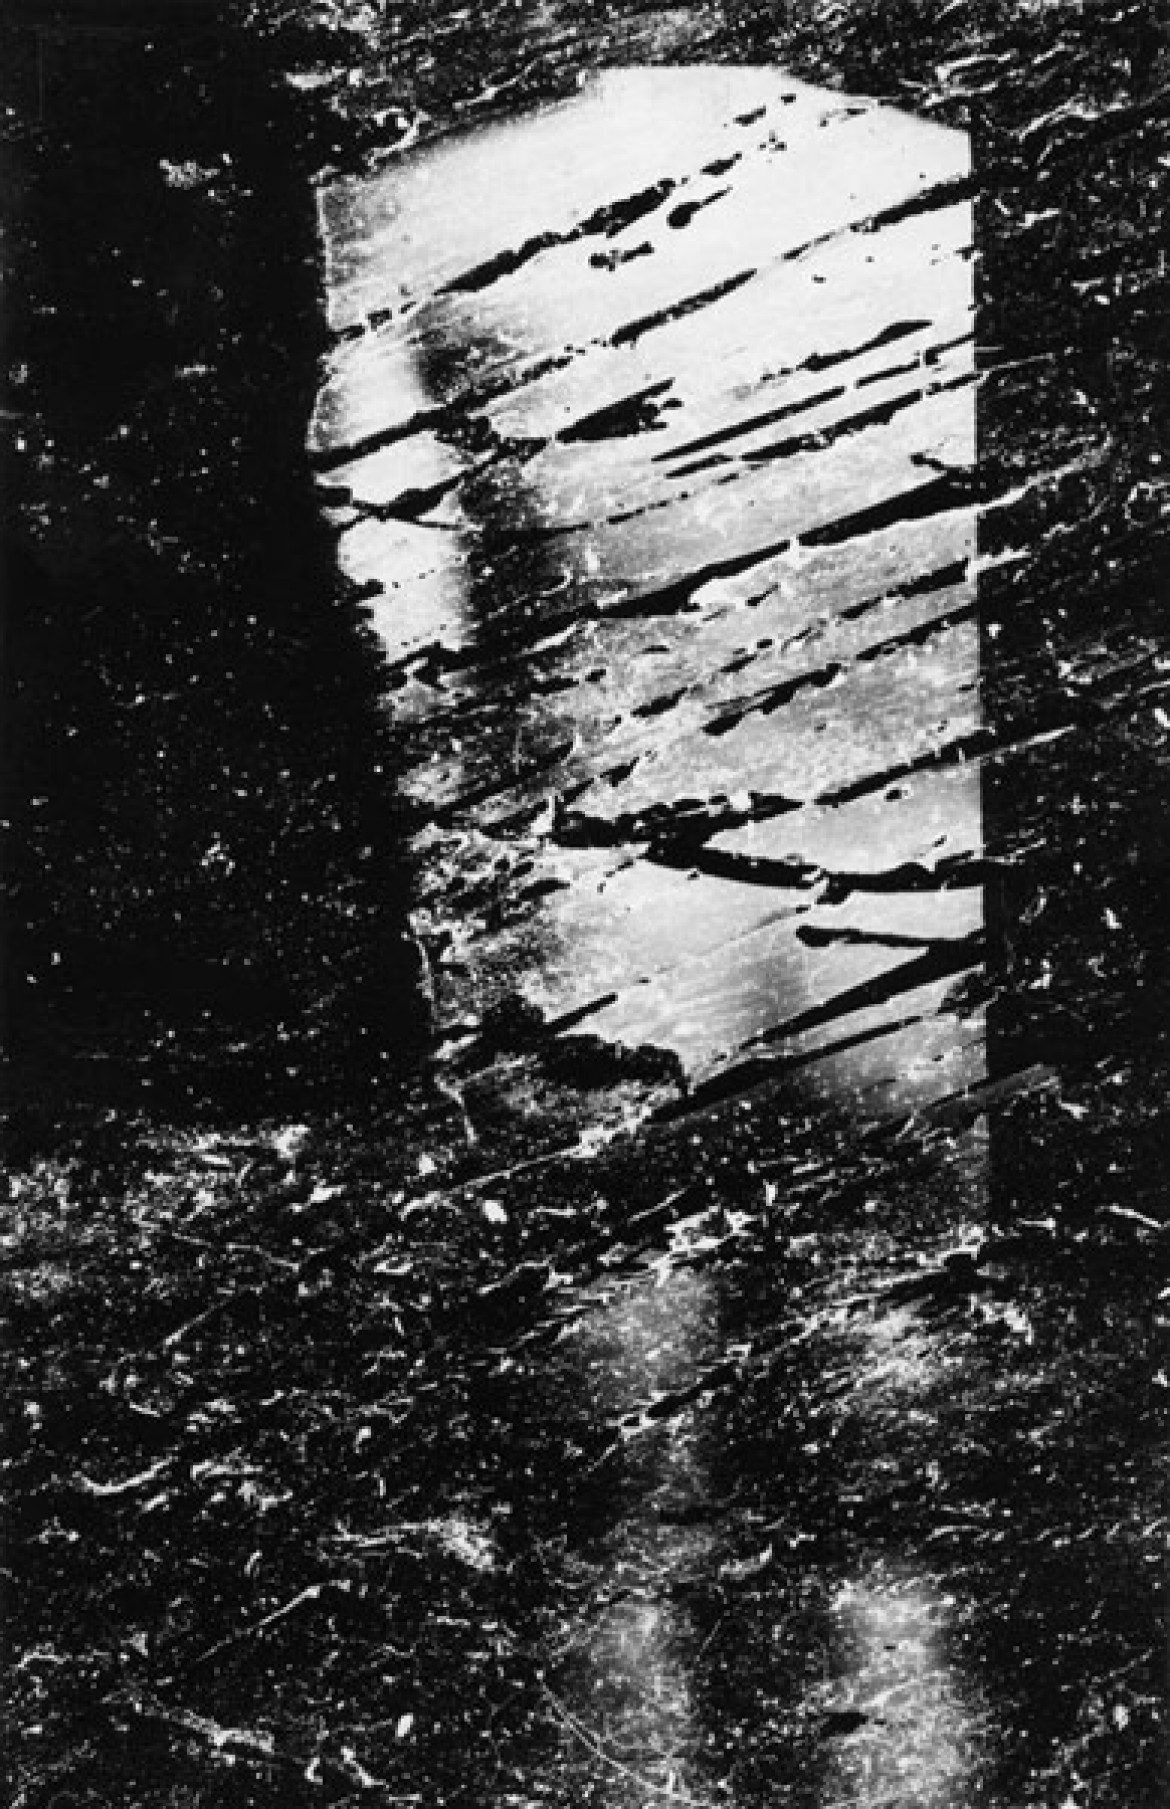 fot. Wojciech Bruszewski, Bez tytułu,, 1969, odbitka bromosrebrowa cz.-b. na papierze, 22,5x15cm, z kolekcji Dariusza Bieńkowskiego